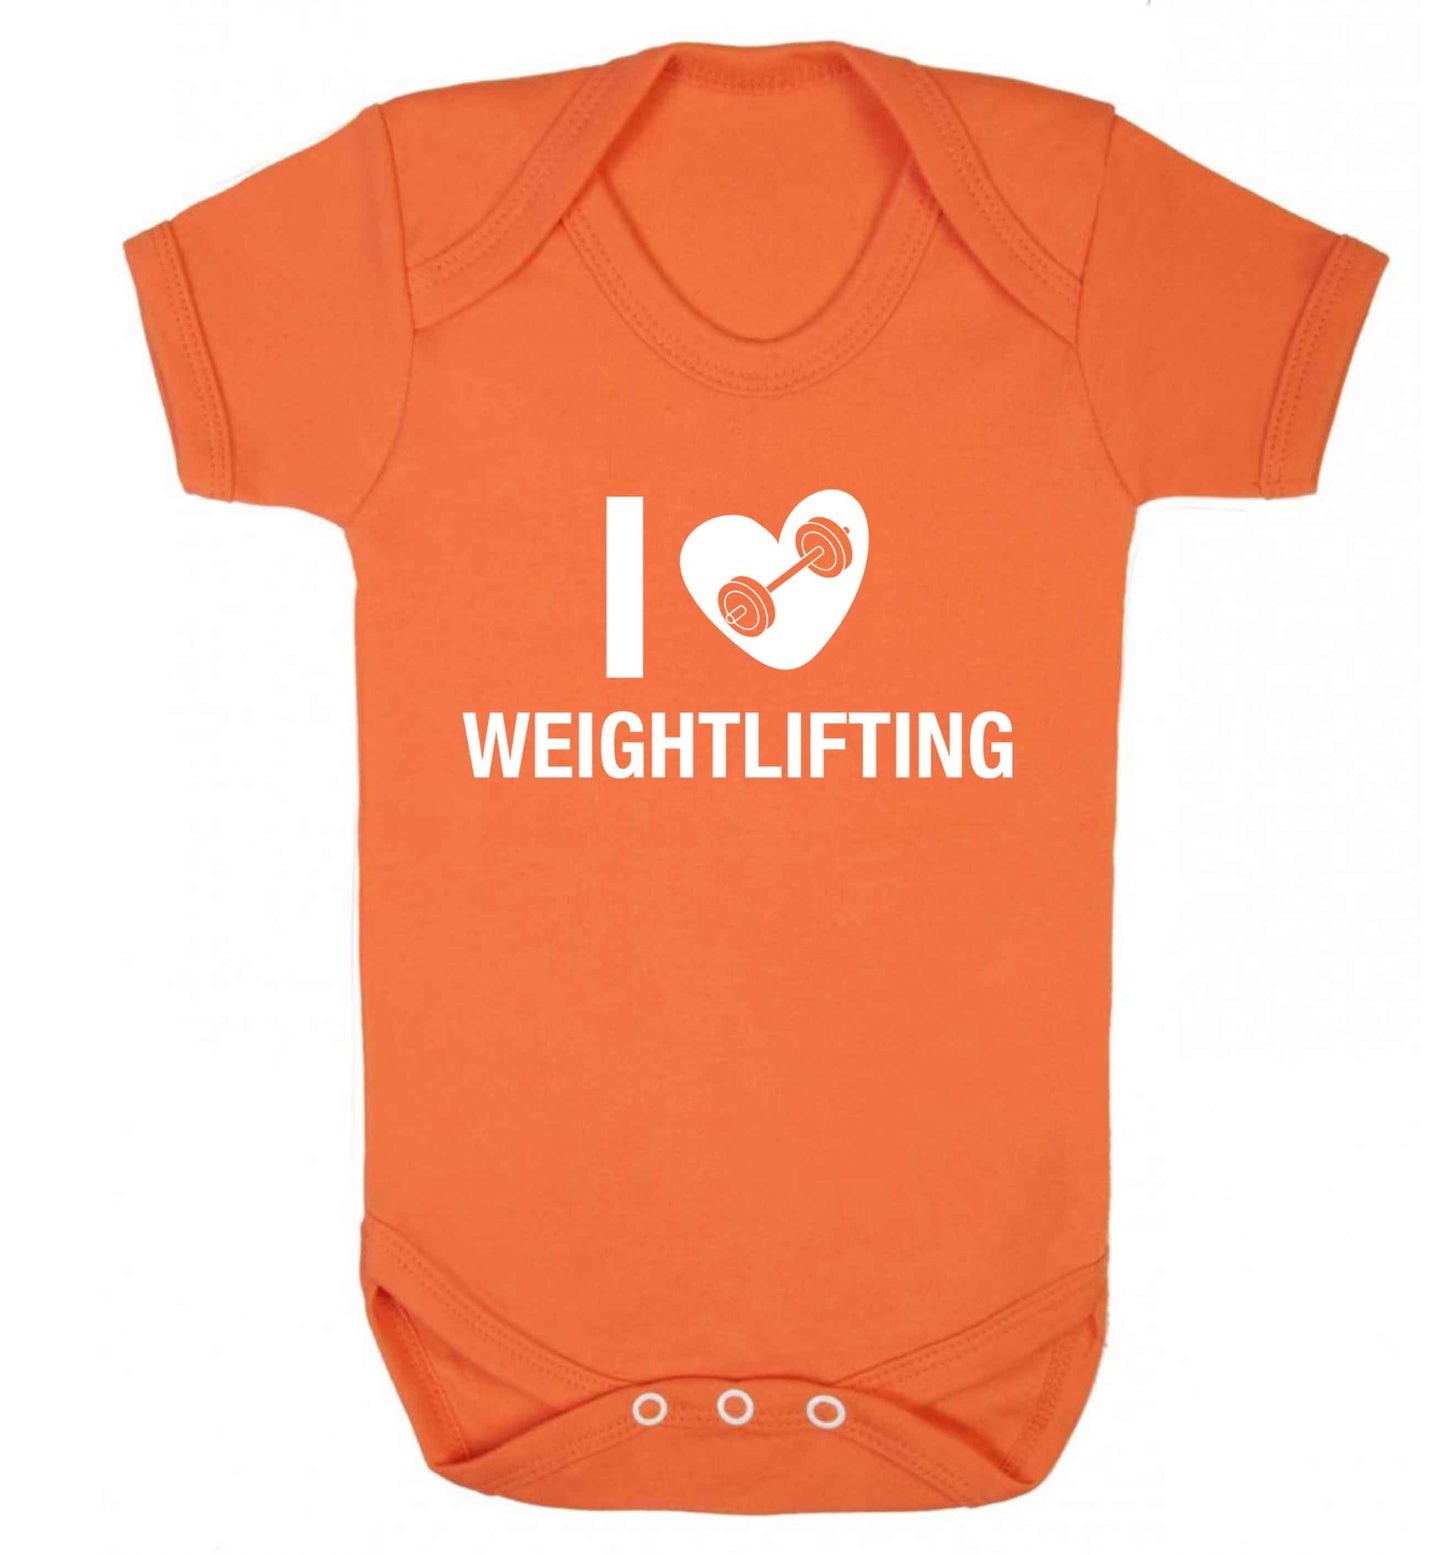 I love weightlifting Baby Vest orange 18-24 months